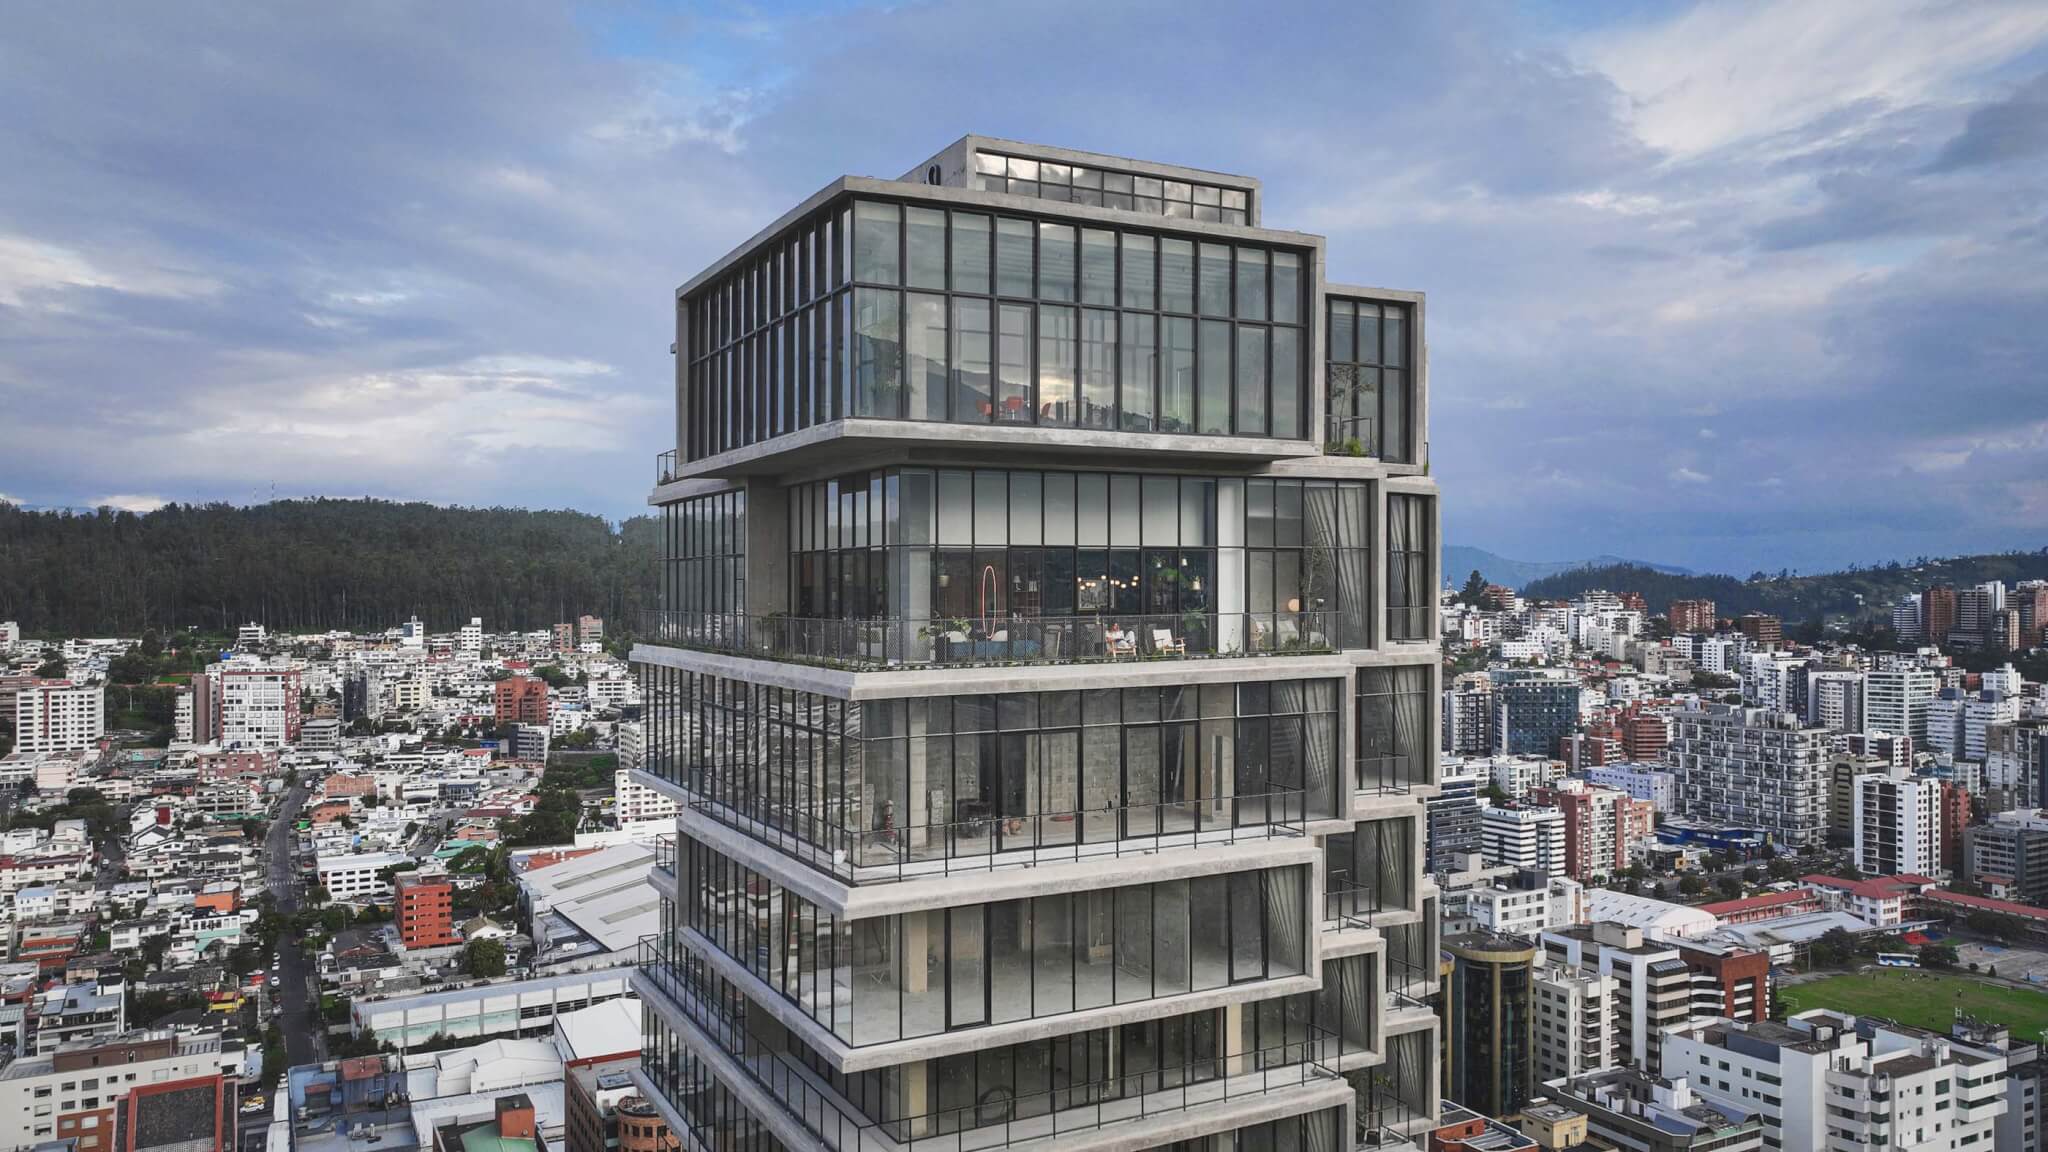 BIG has completed IQON Quito, Ecuador's tallest building